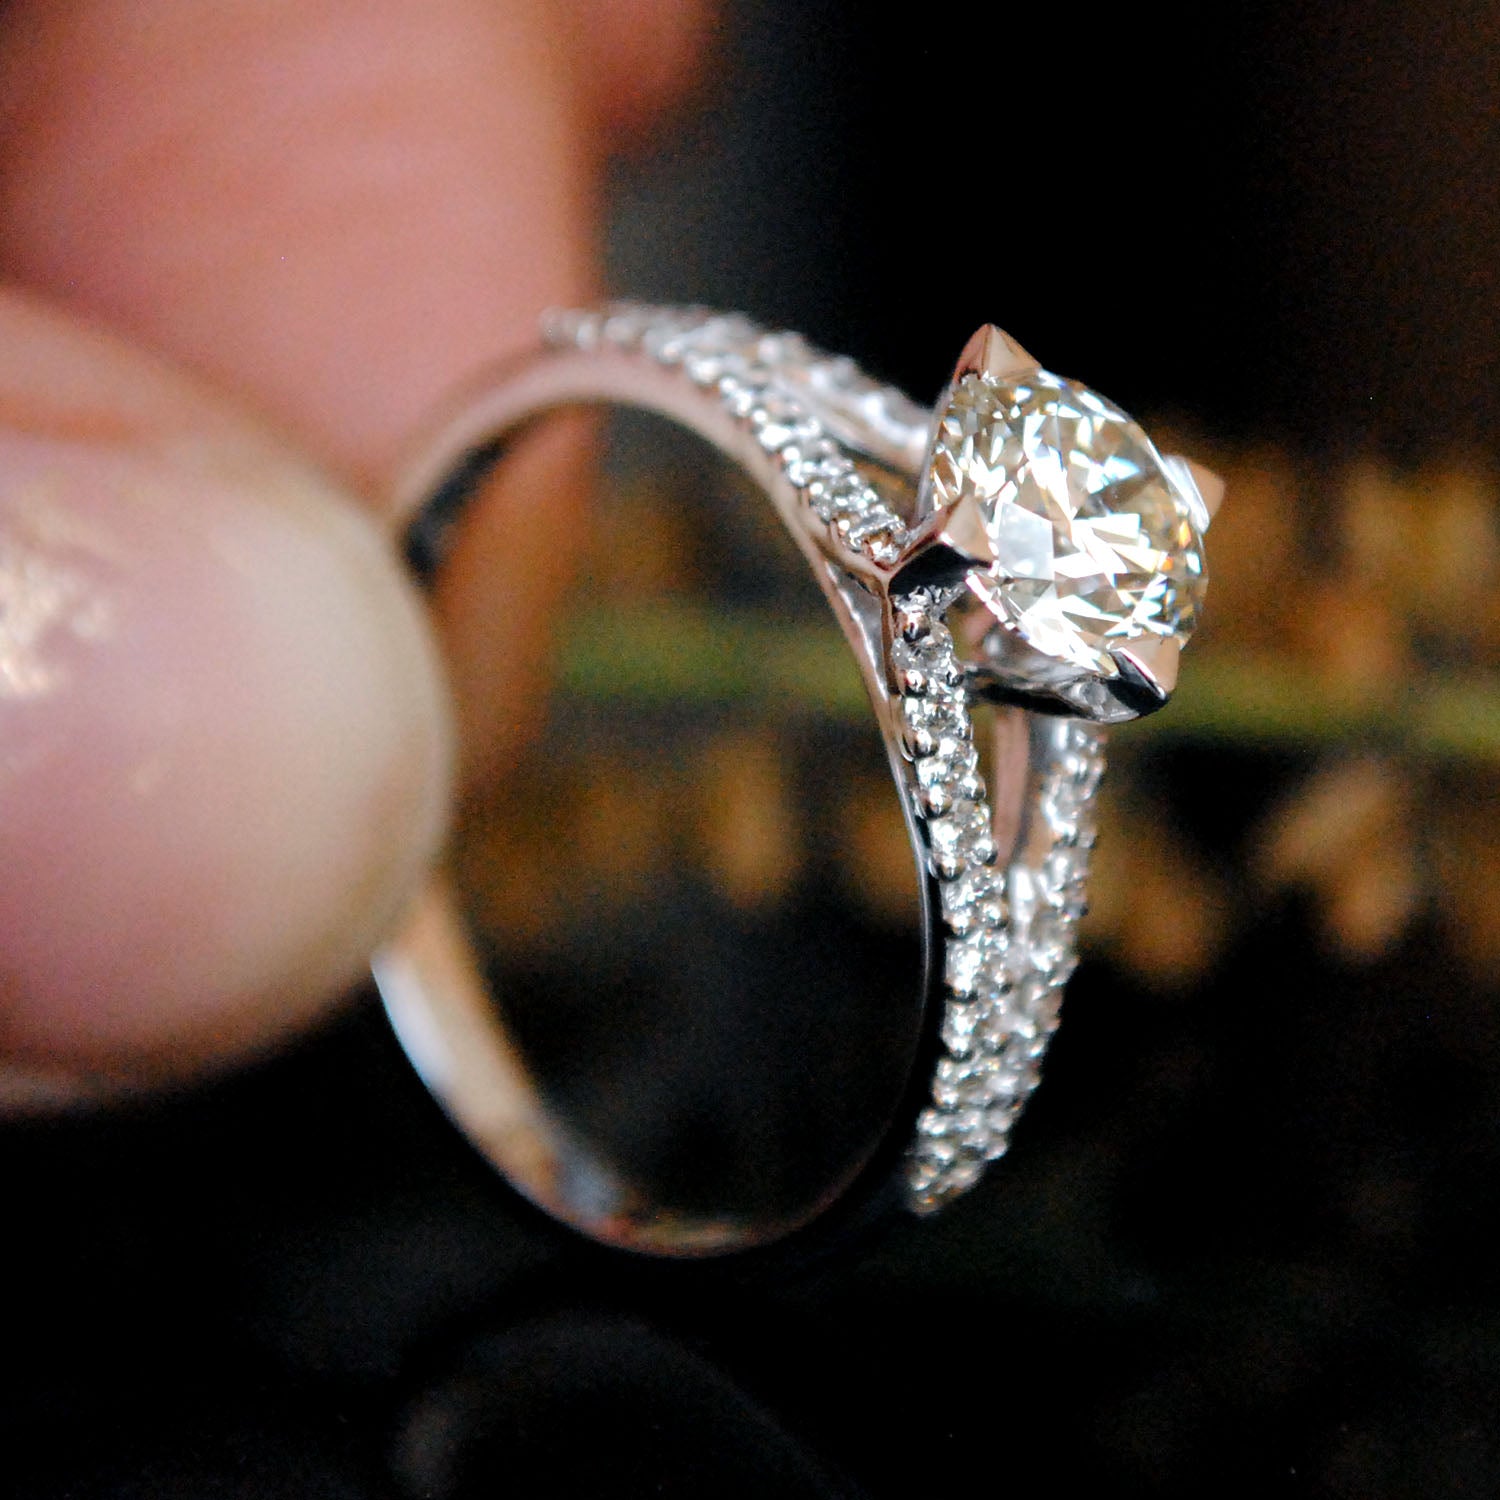 1 Carat Diamond Ring Price - Beautiful Gems and Jewellery